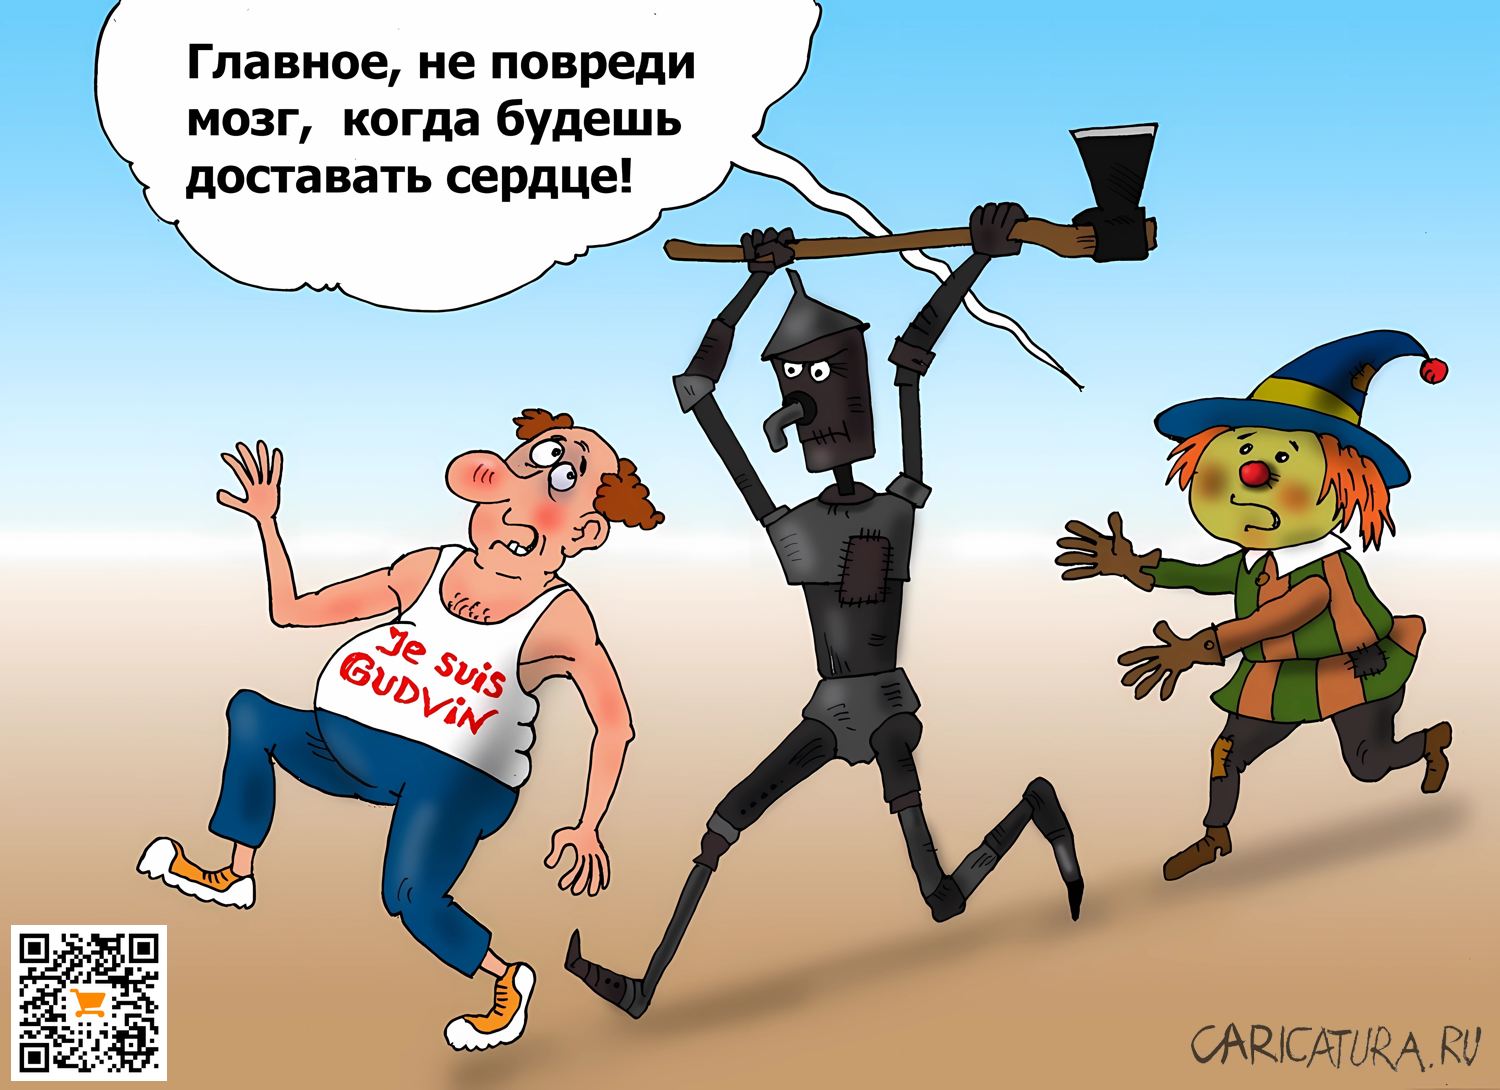 Карикатура "Гудвин", Валерий Тарасенко